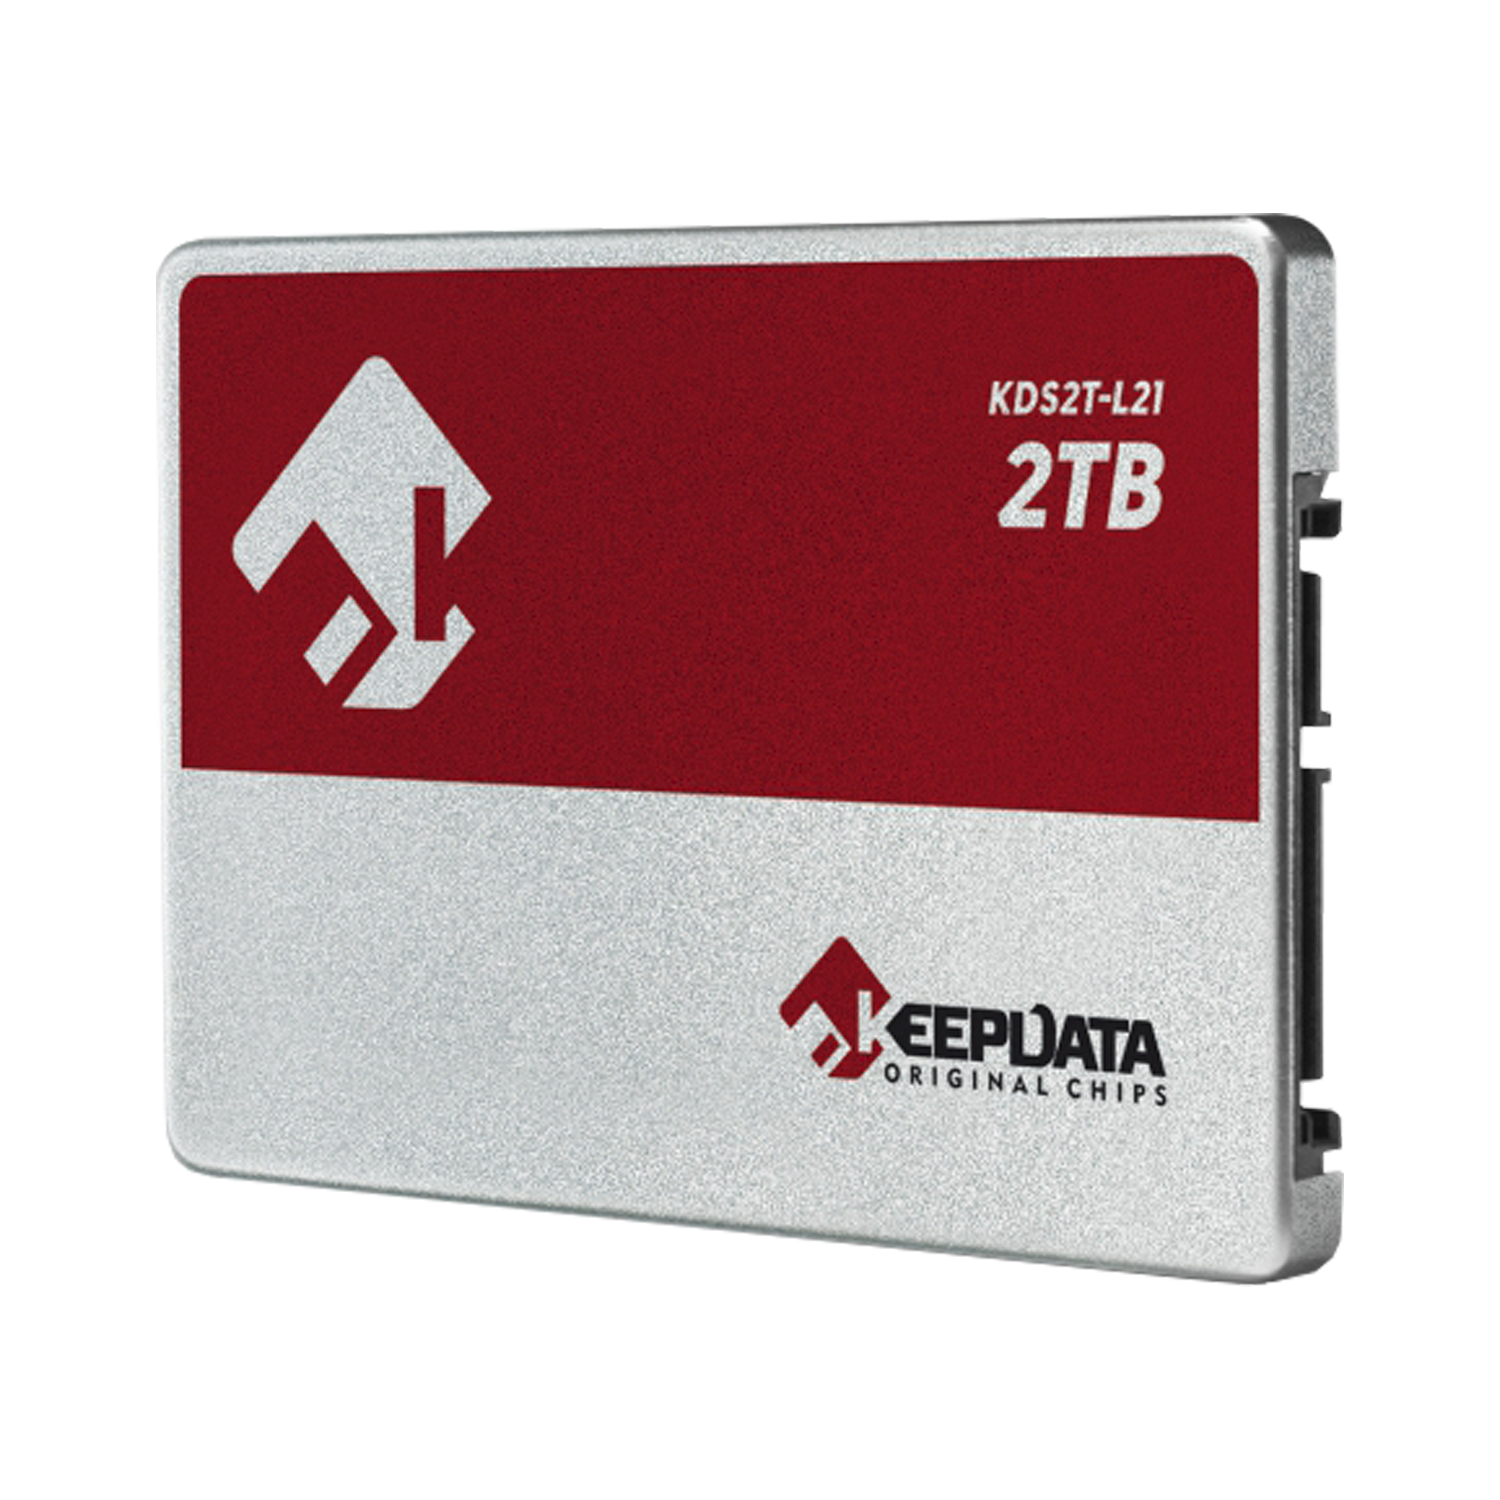 SSD Keepdata 2TB / 2.5 / 550 / 550 - (KDS2T-L21)